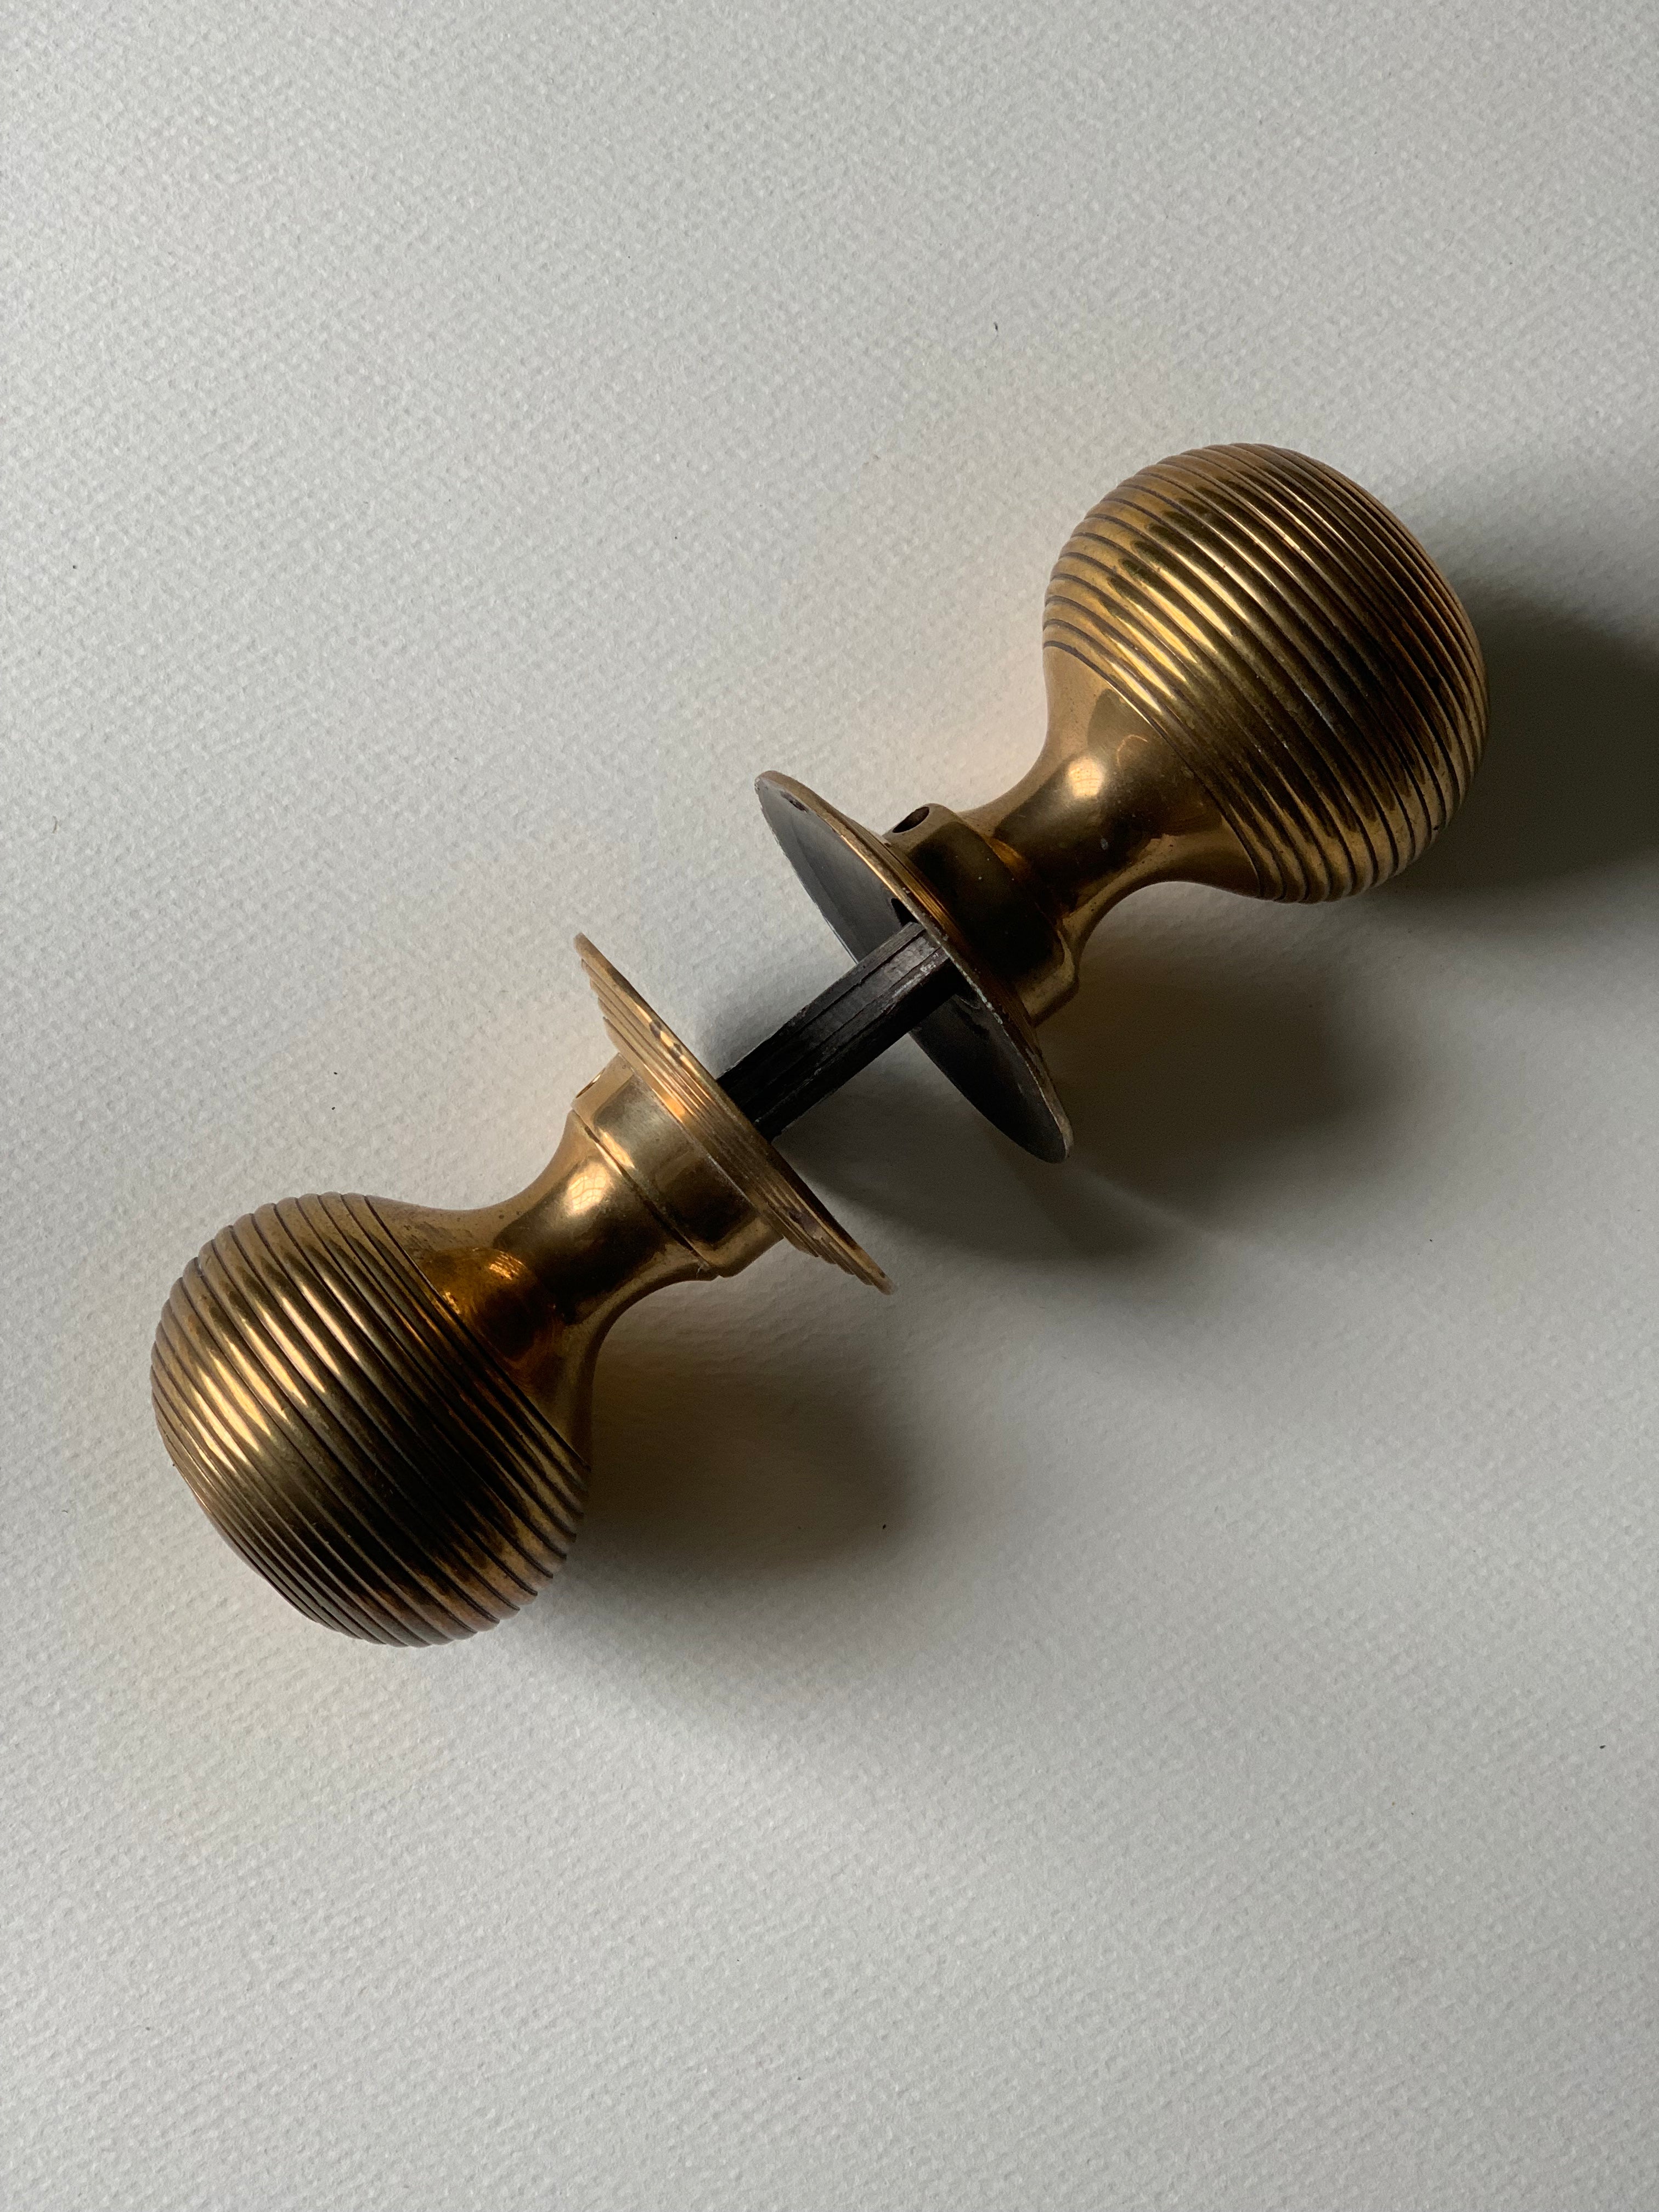 Reclaimed Brass doorknob set